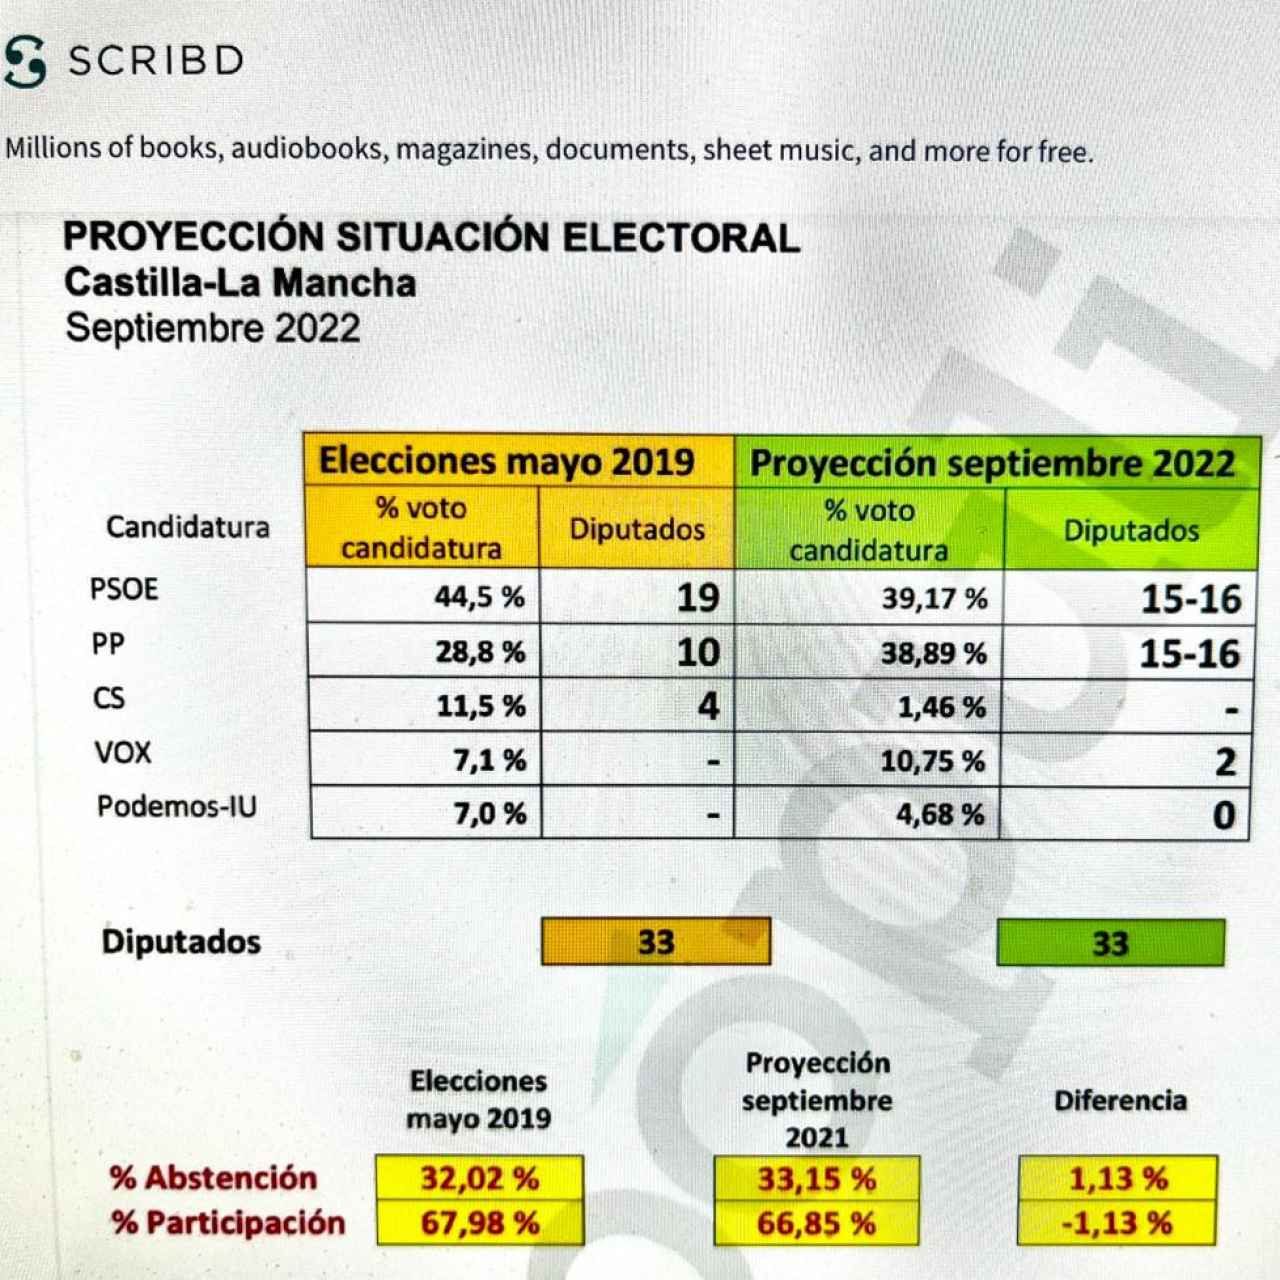 Proyección electoral del PP. Septiembre 2022